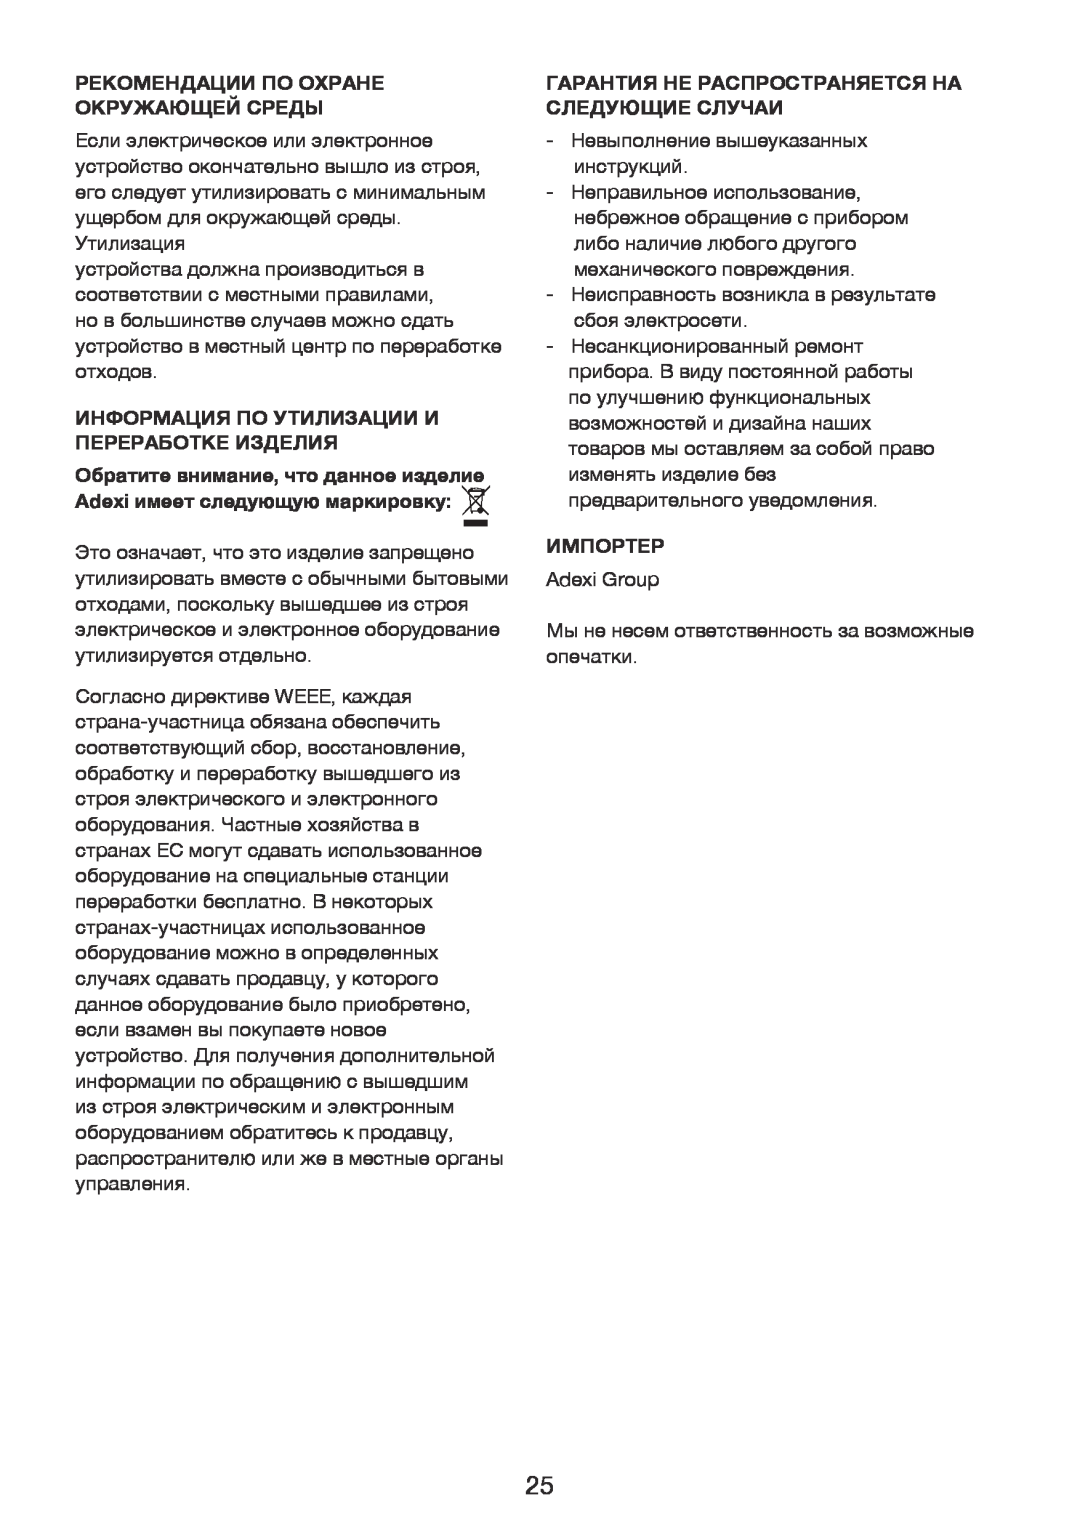 Exido 246-017 manual Рекомендации По Охране Окружающей Среды, Информация По Утилизации И Переработке Изделия, Импортер 